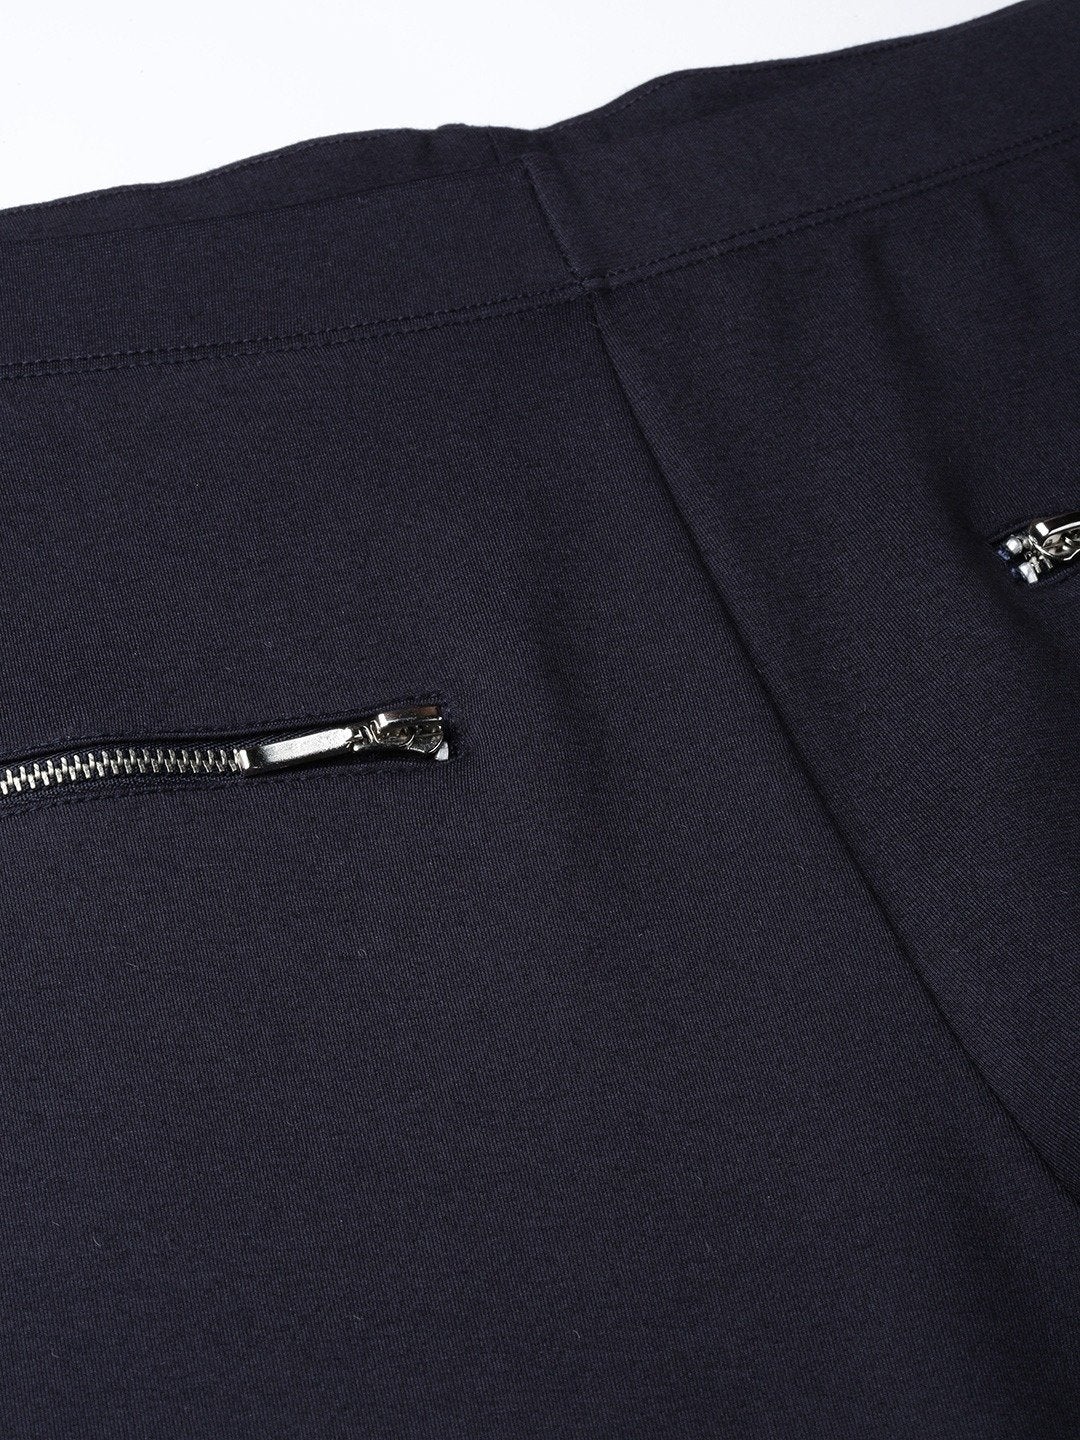 Women's Navy Pocket Chain Detail Jeggings - SASSAFRAS